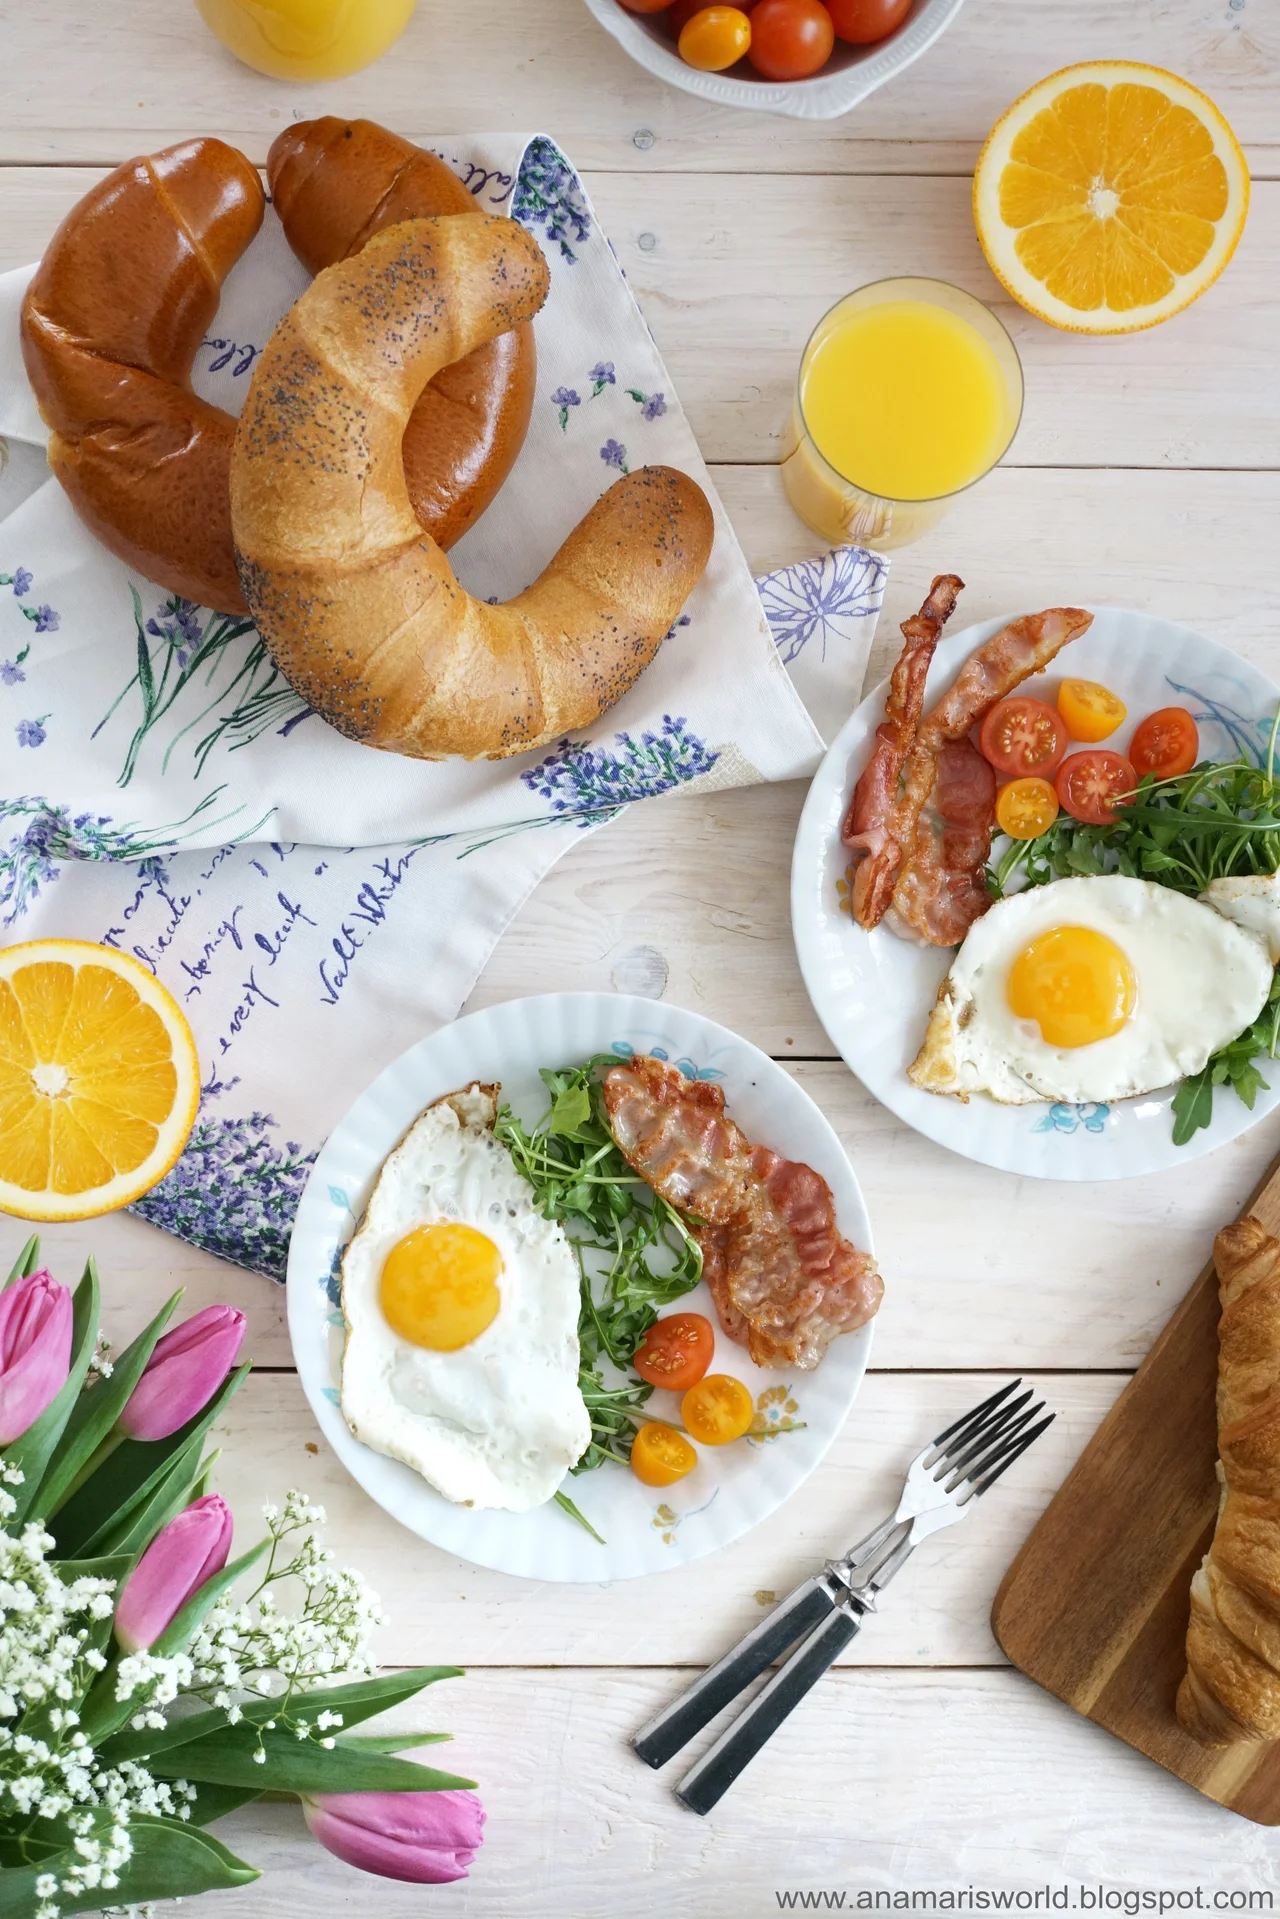 Europejskie śniadanie